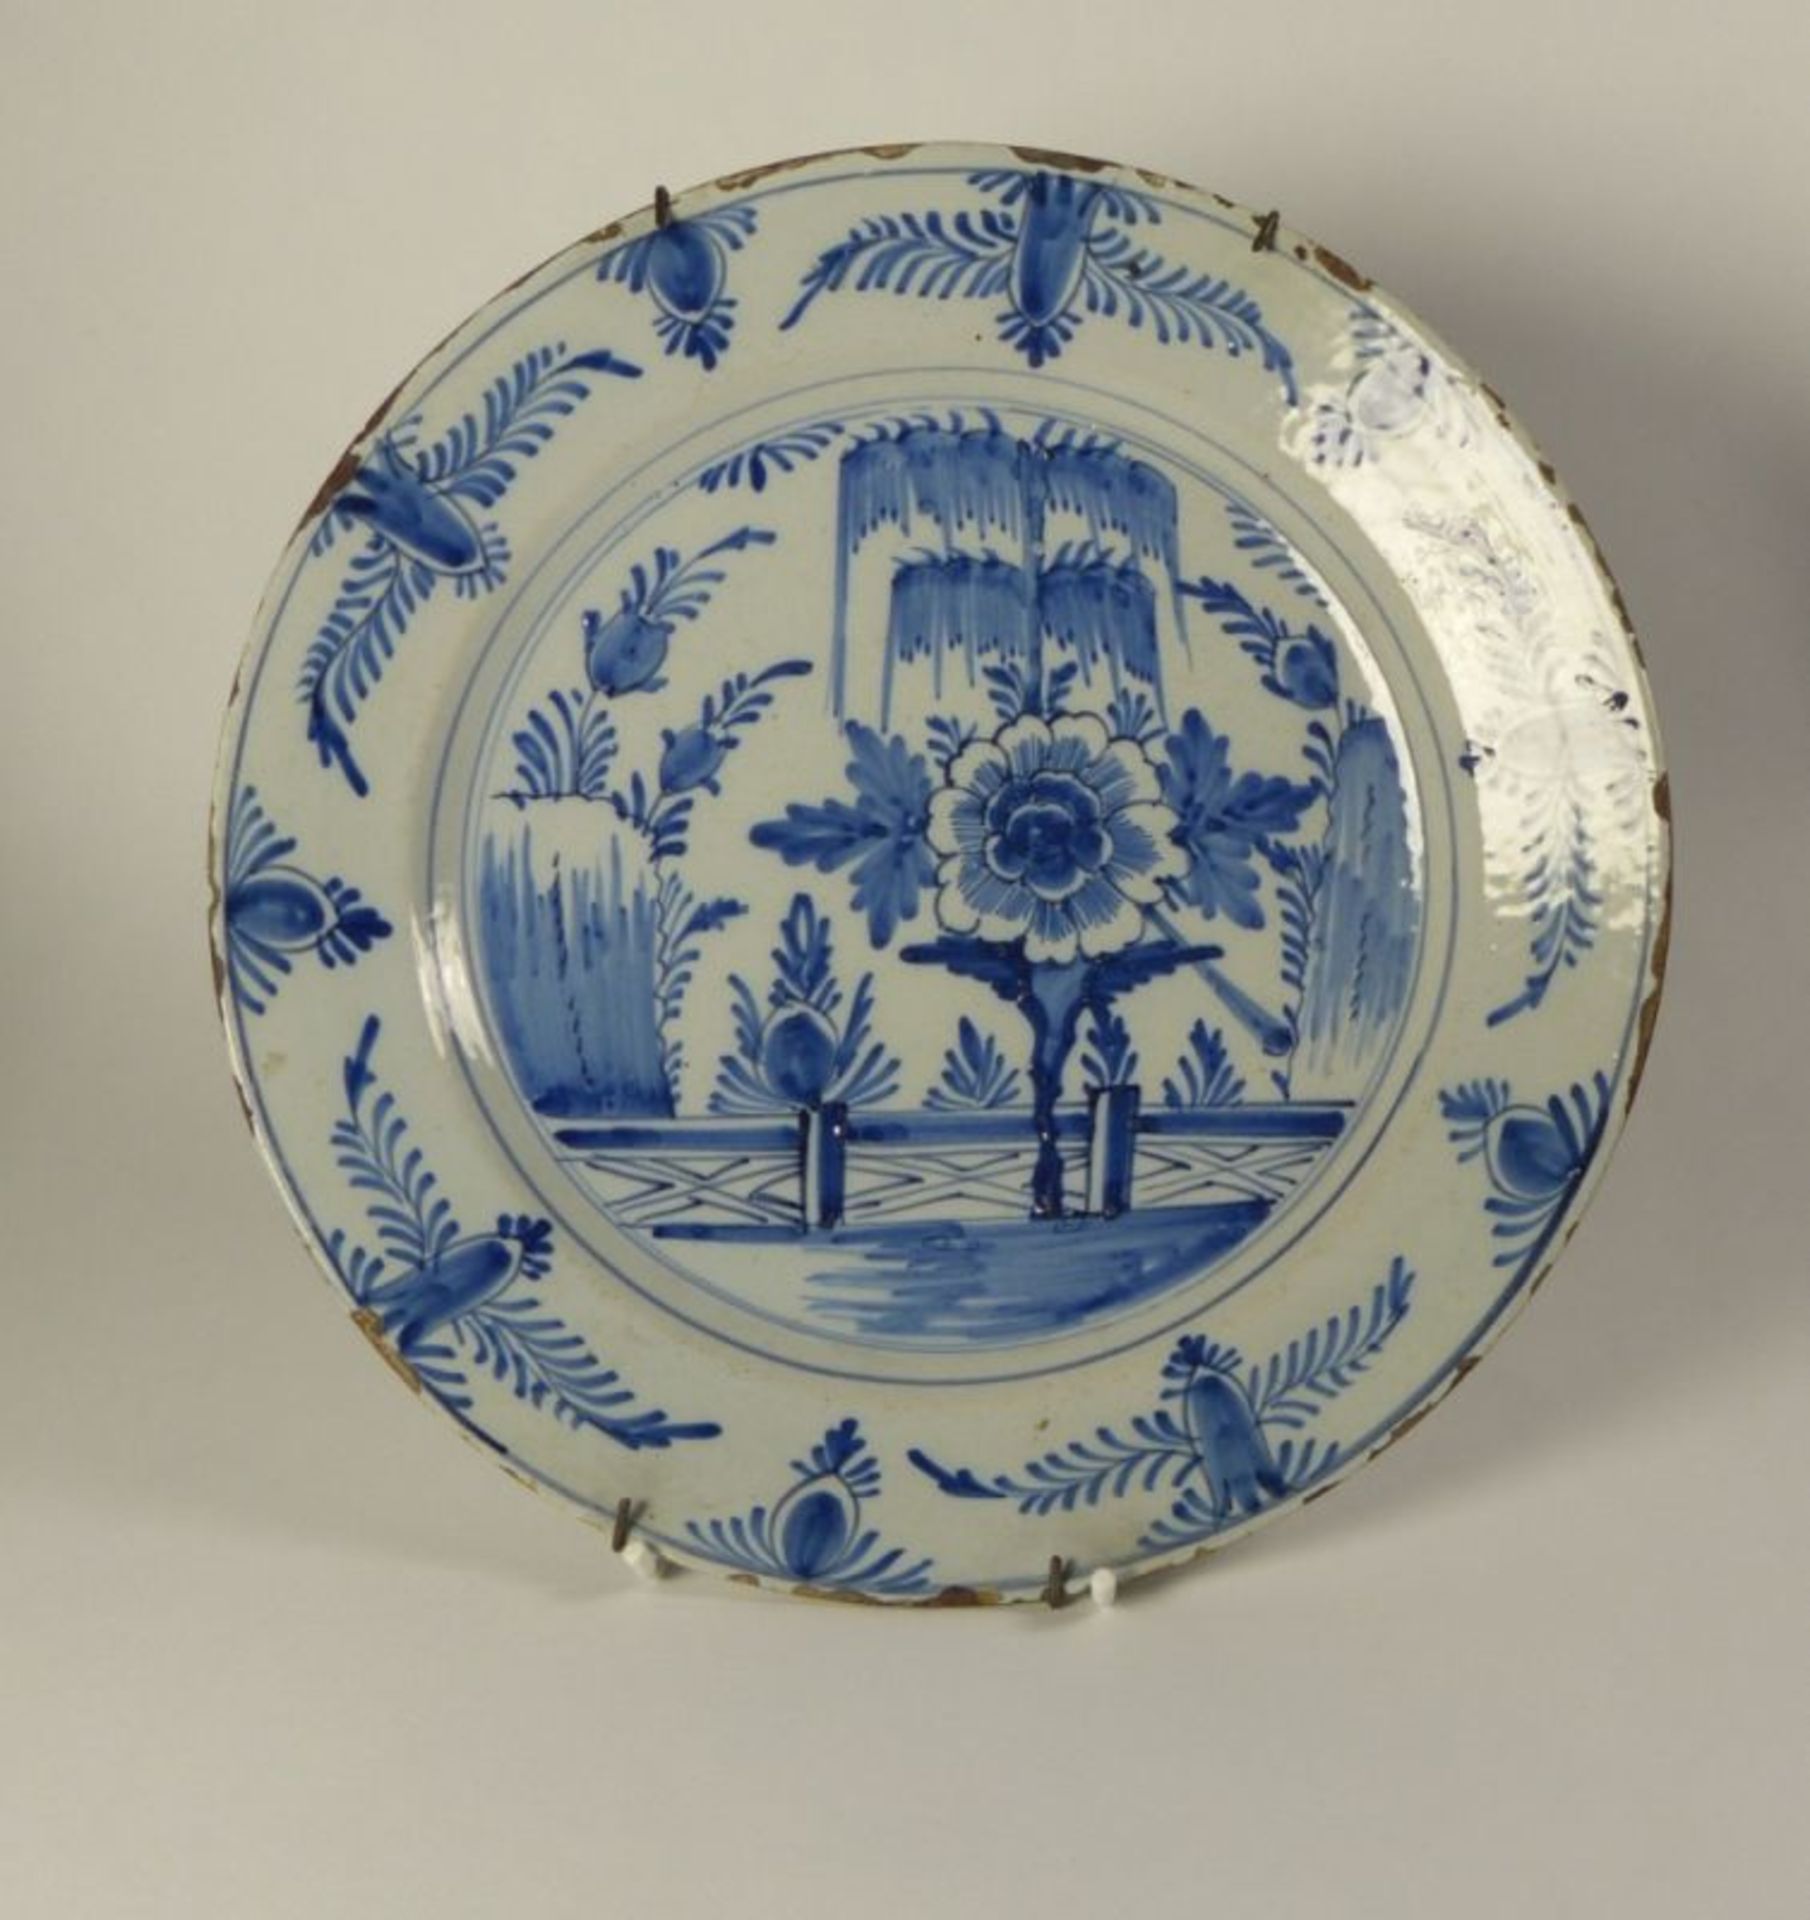 Großer Blau-weiß-Teller mit asiatischer LandschaftDelft, 18. Jh.Weißgrundig glasierte Fayence mit